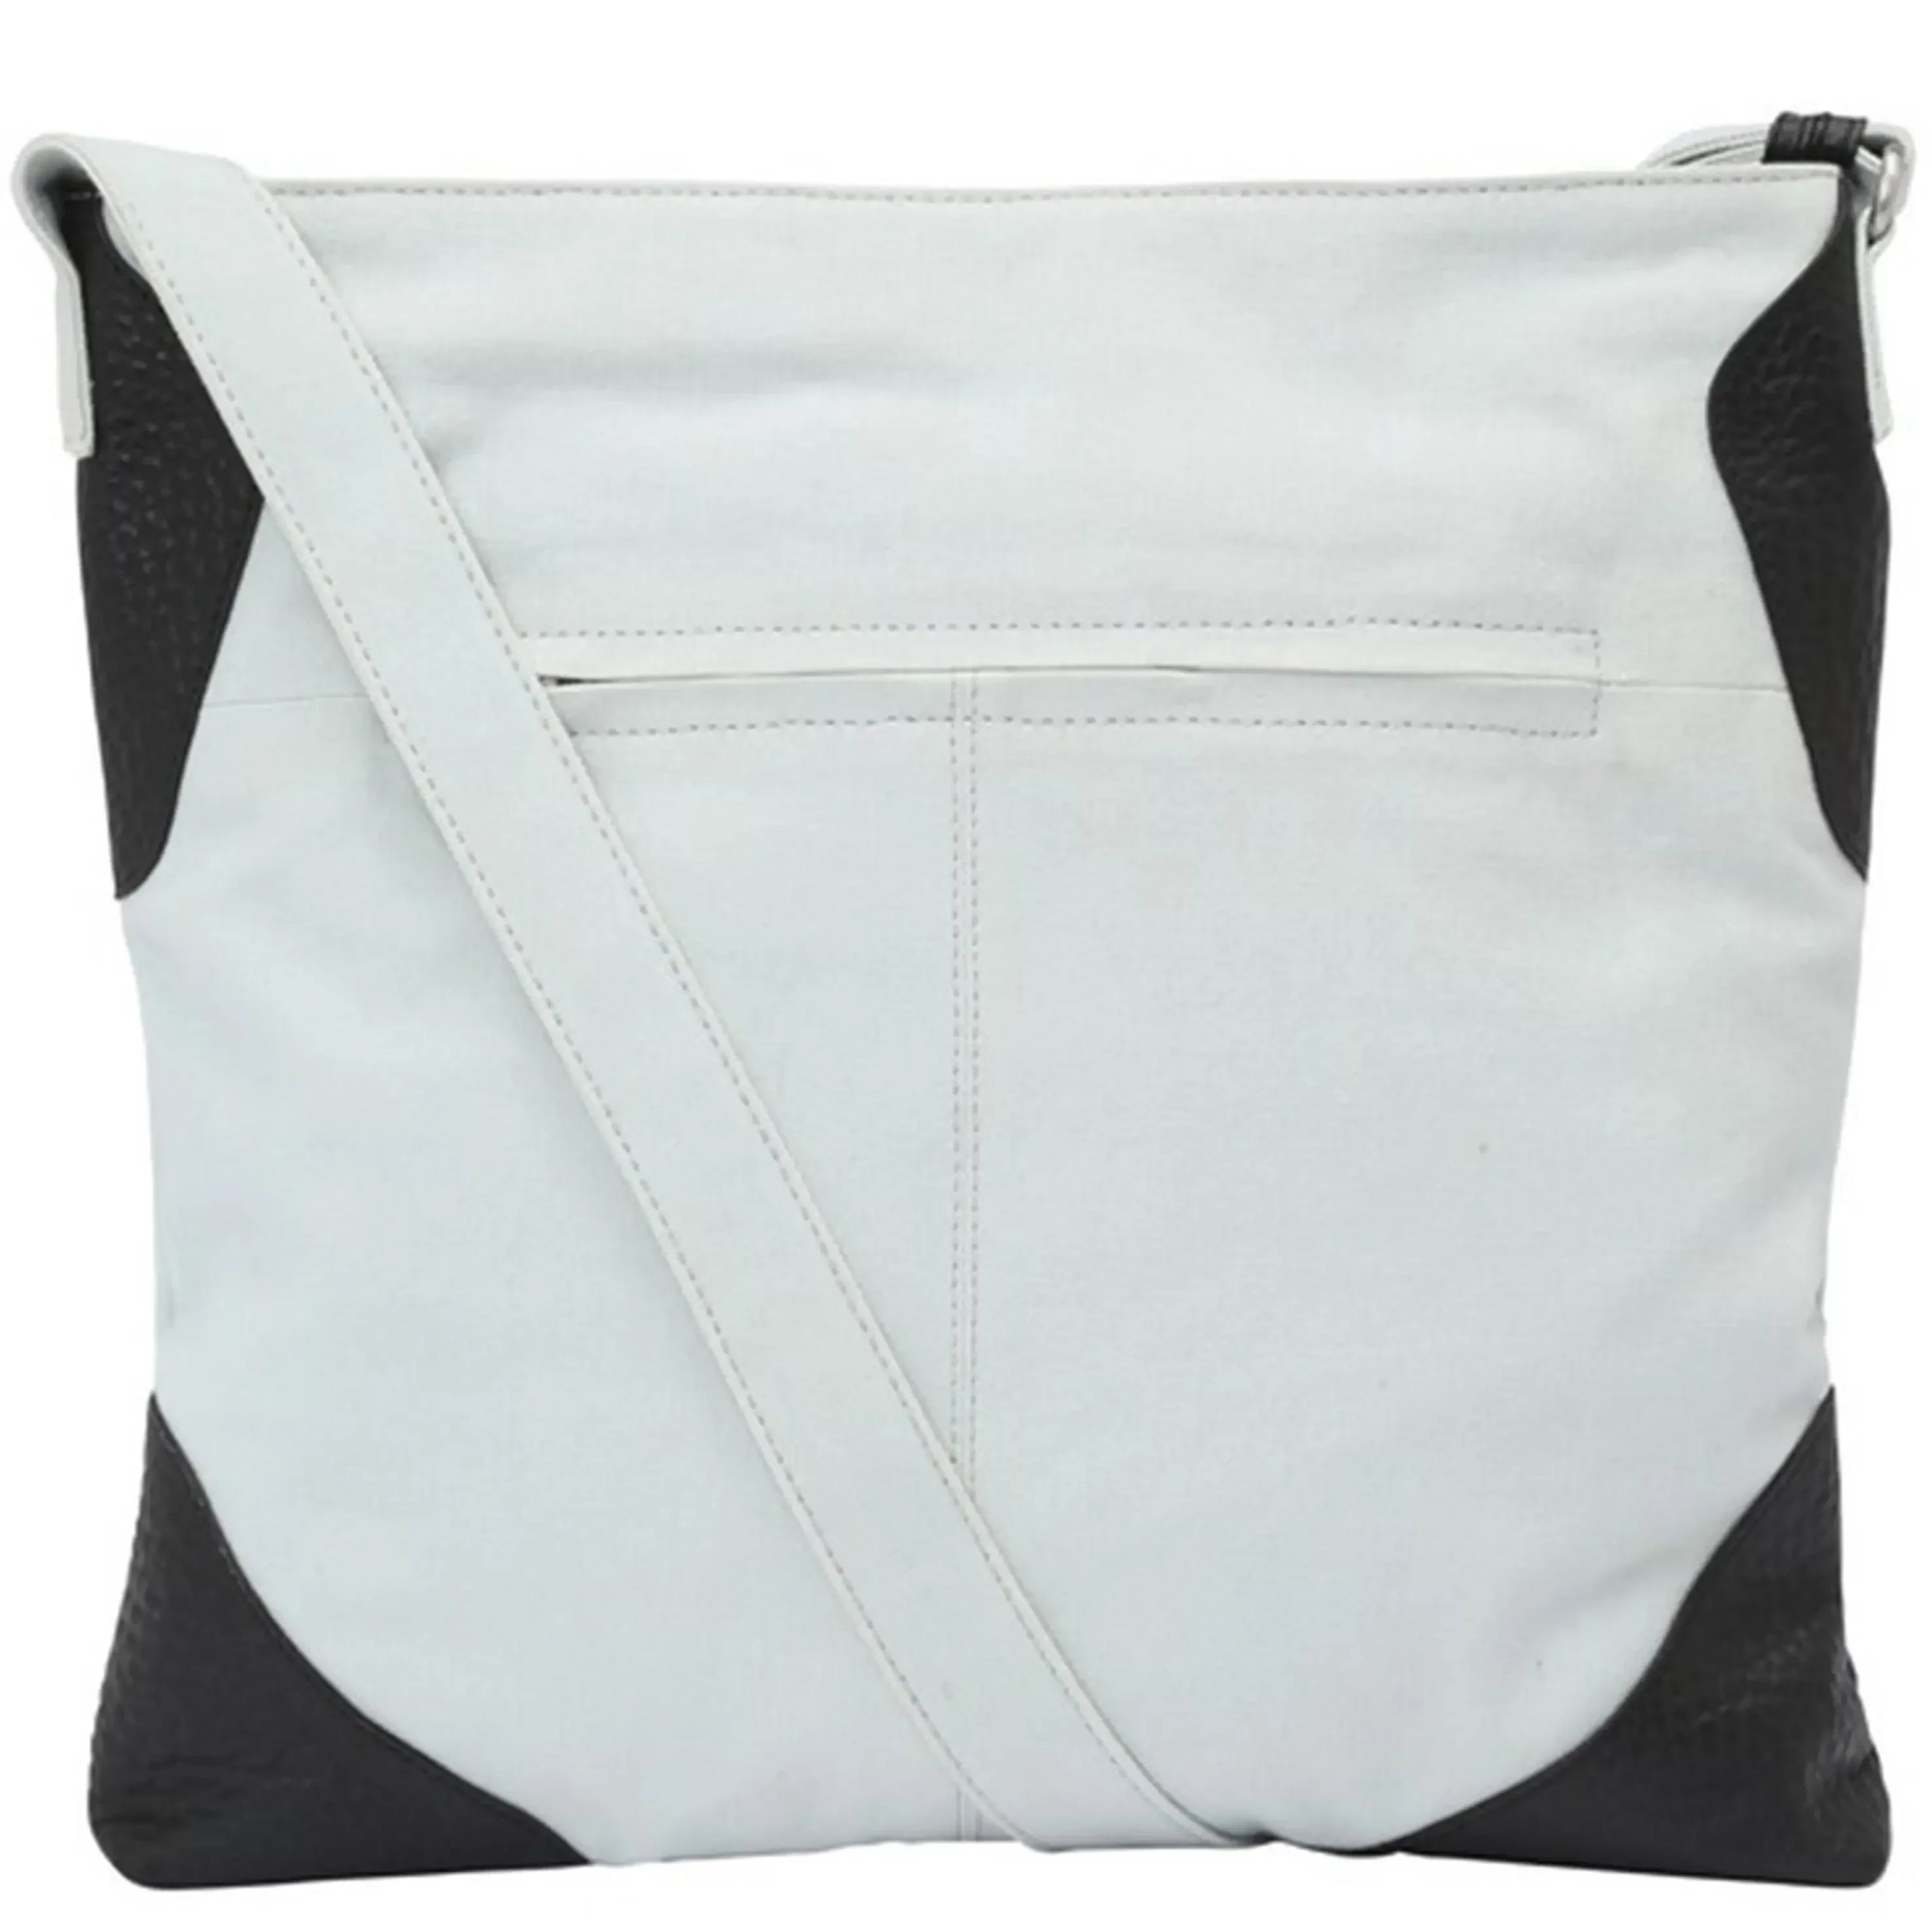 VOi-Design Sportivo Ria shoulder bag 34 cm - Black/Platinum